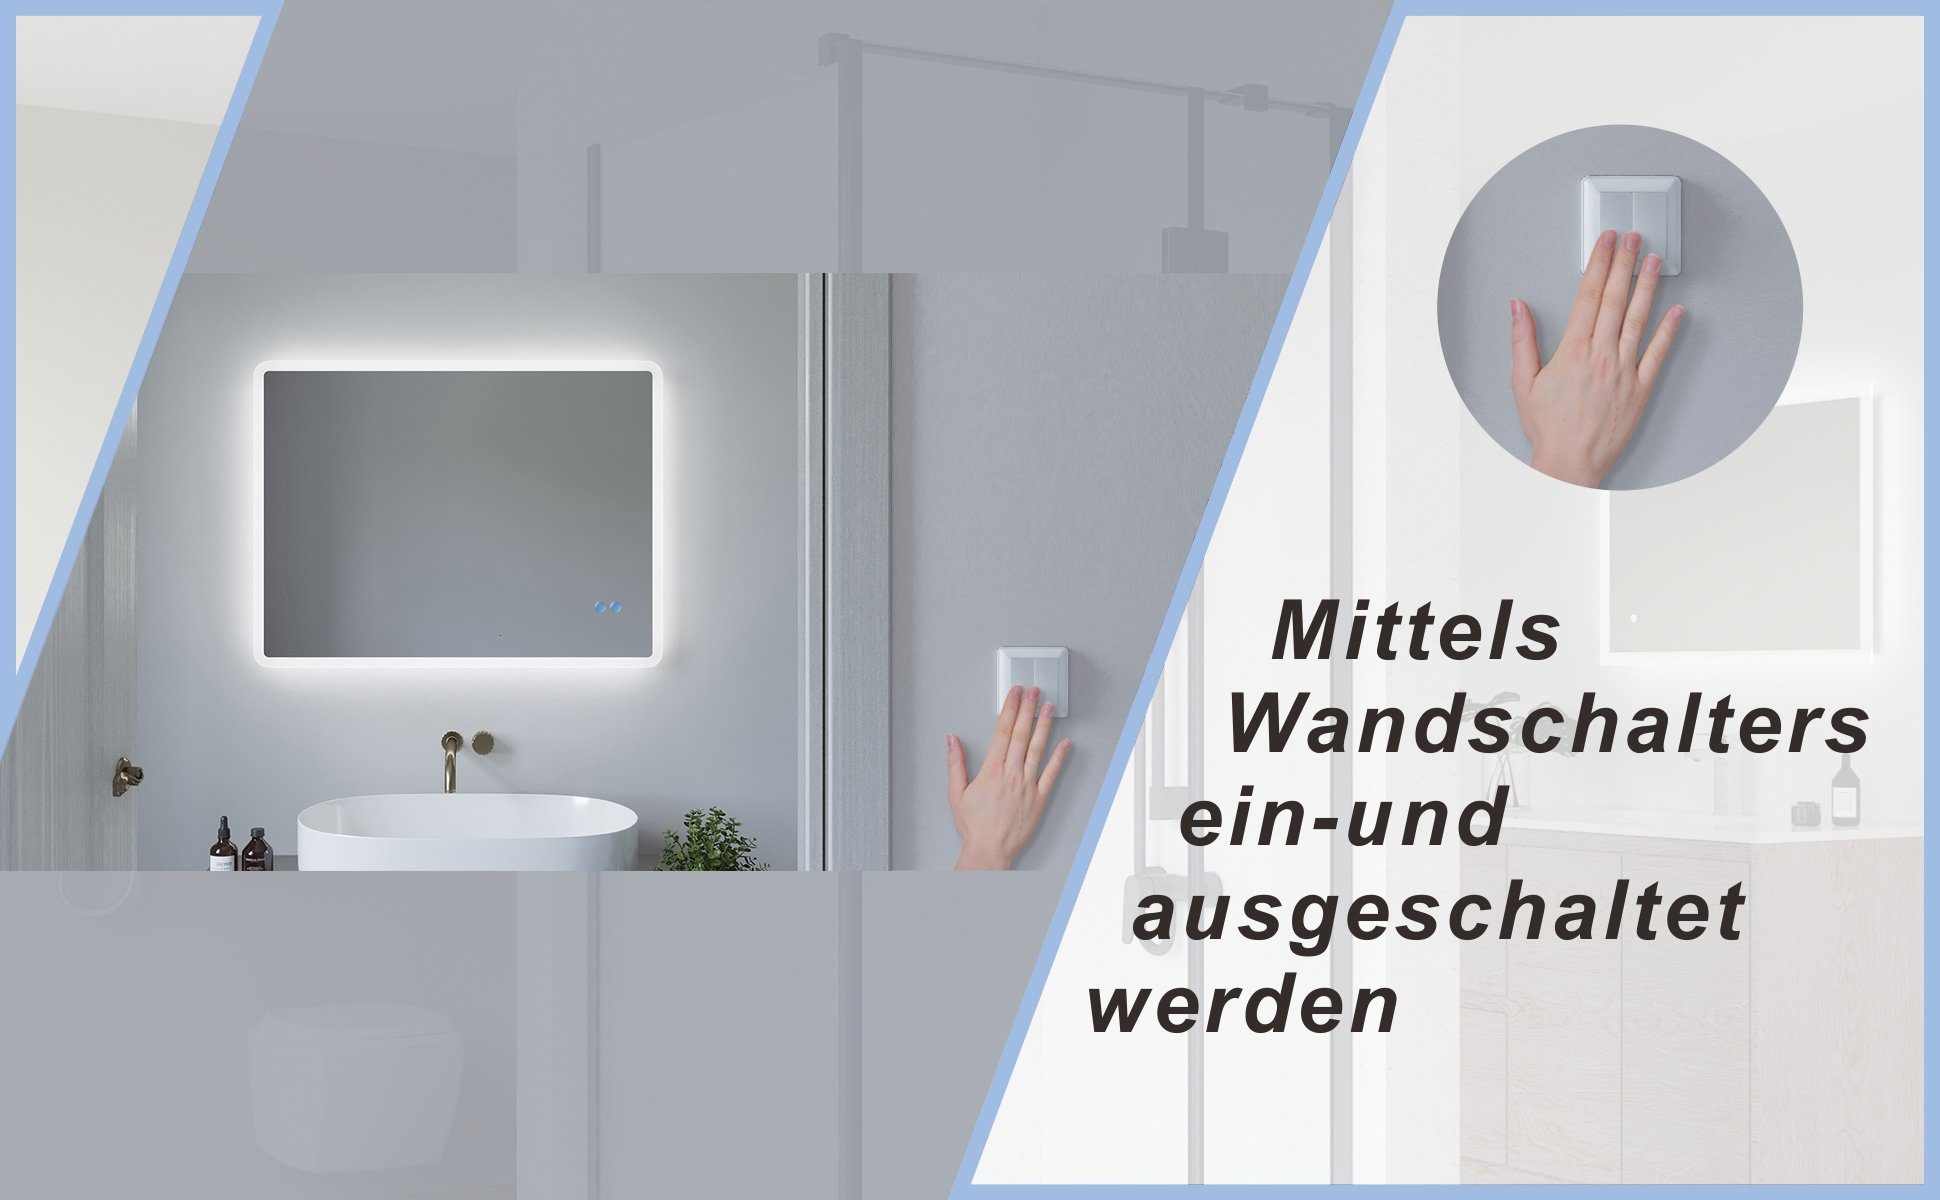 AQUABATOS Badspiegel Badspiegel mit Beleuchtung 6400K, LED Spiegelheizung Wandspiegel Touch Schalter, Kaltweiß Lichtspiegel Dimmbar, (Badezimmerspiegel beleuchtet)